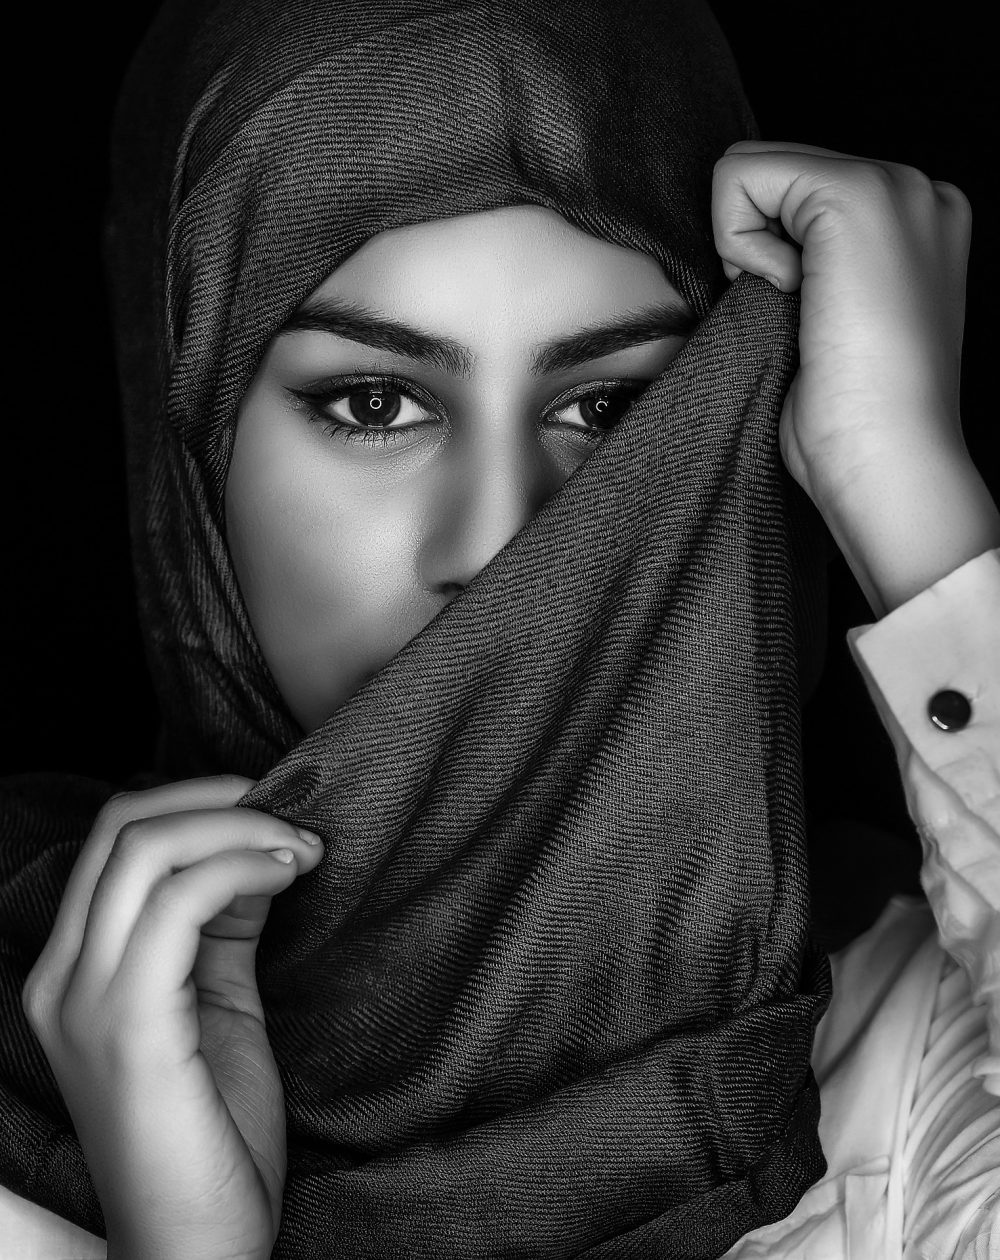 Indossare lo Hijab - Anti-Discriminazione